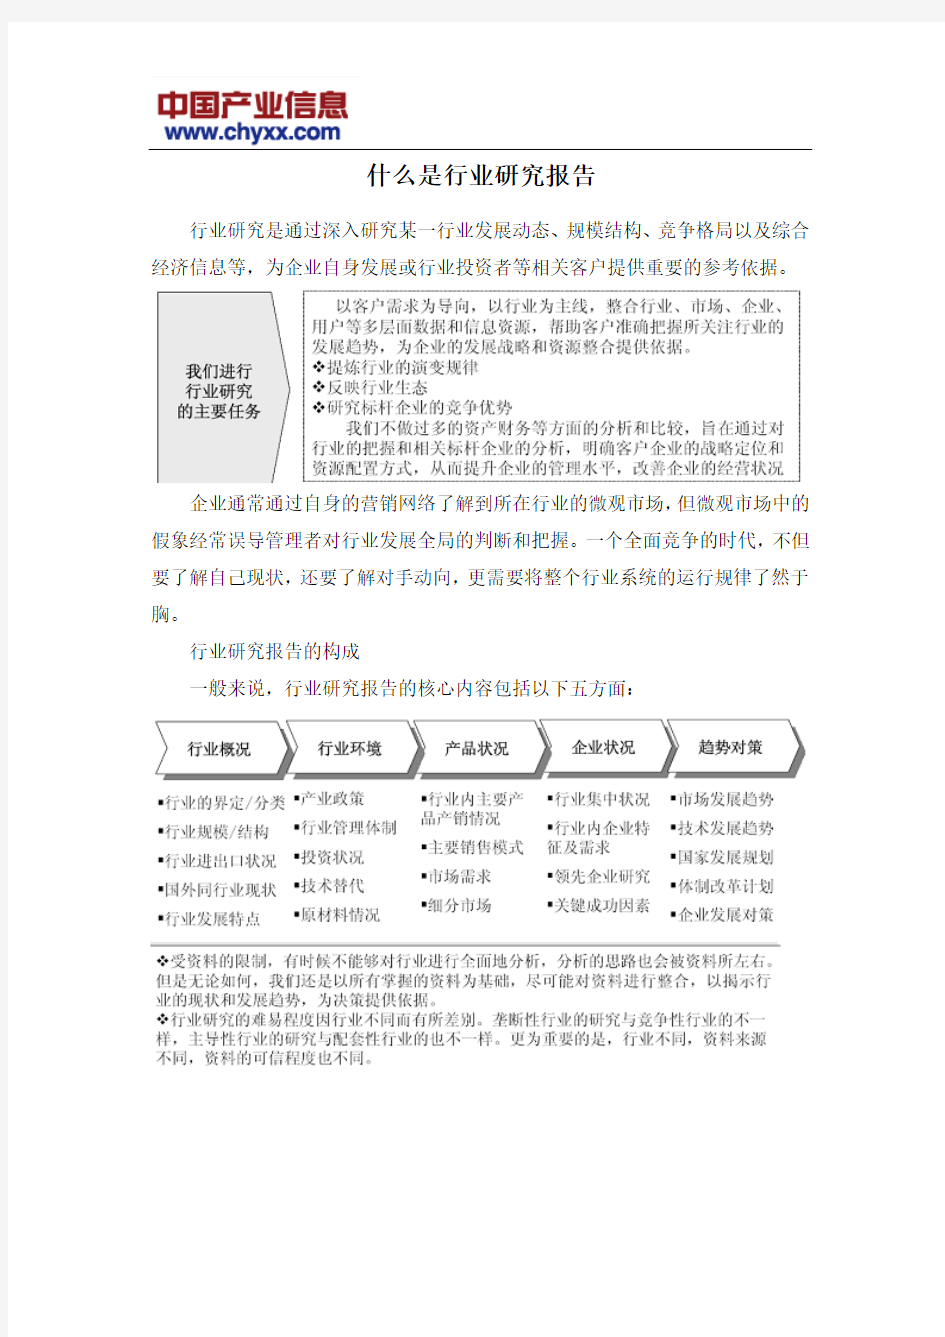 2015-2020年中国汽车线束行业运营态势报告